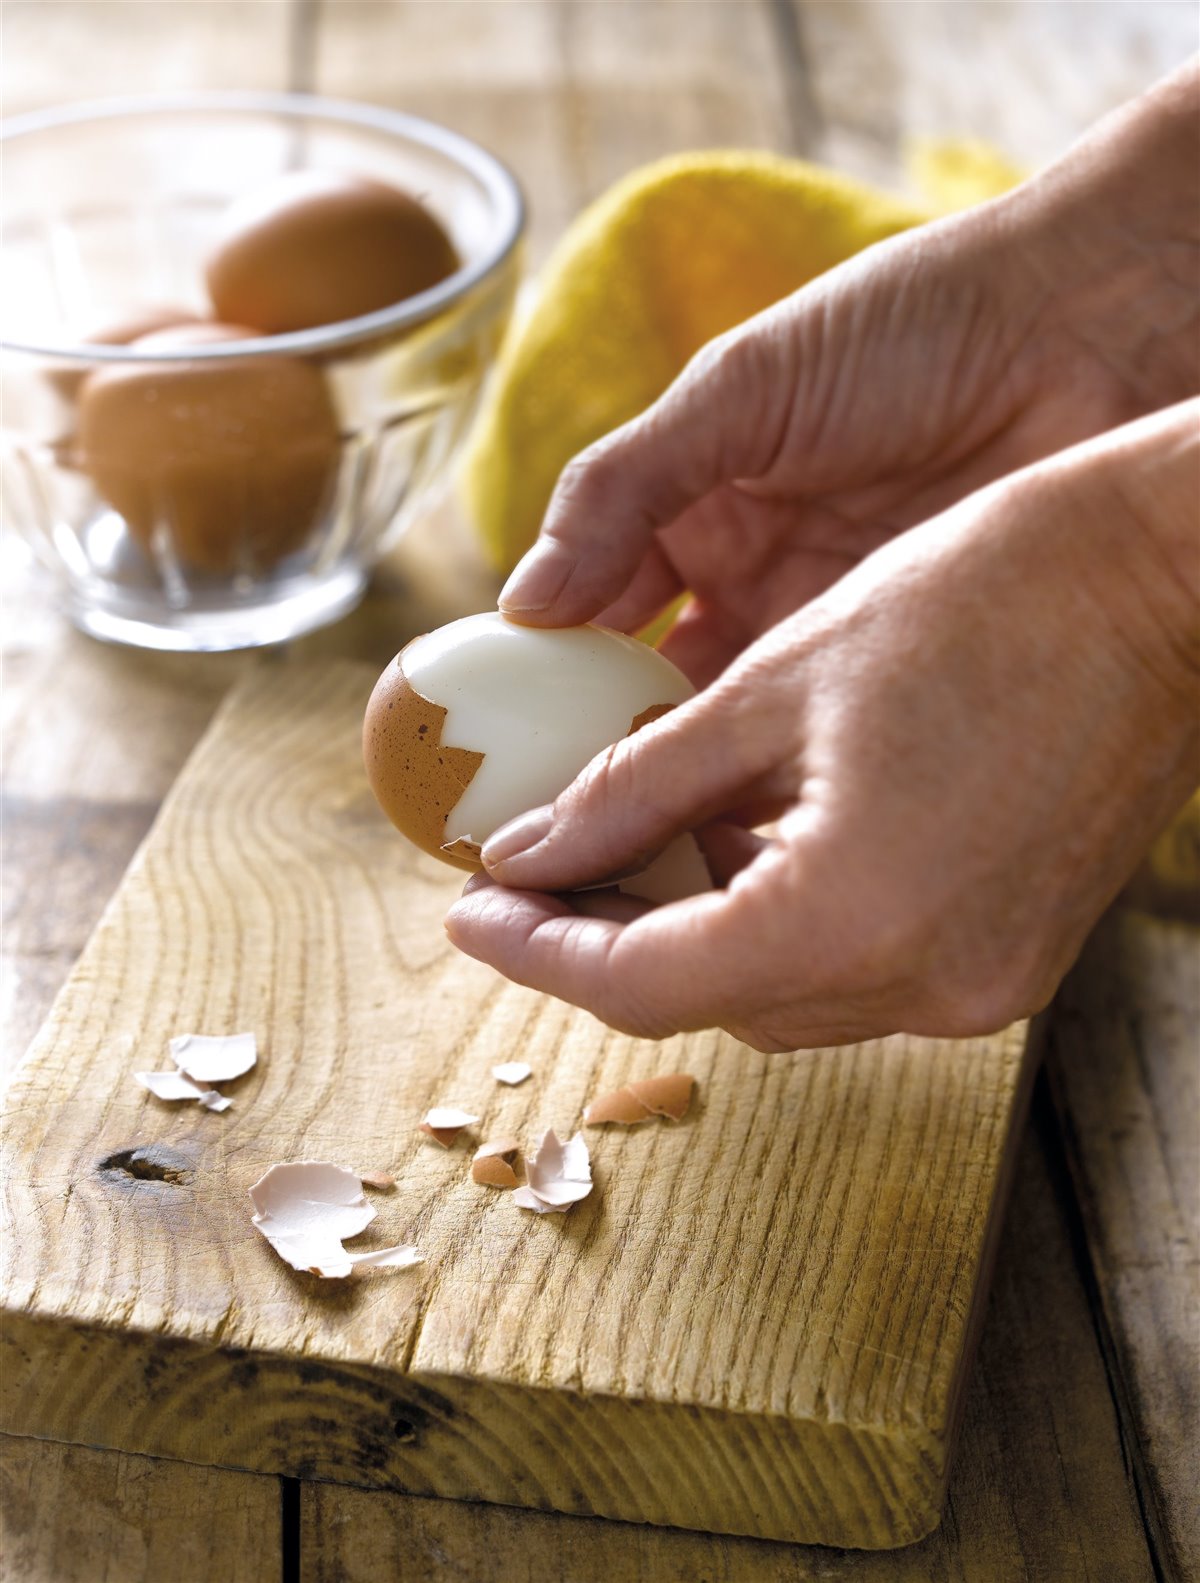 pelar huevo cocido